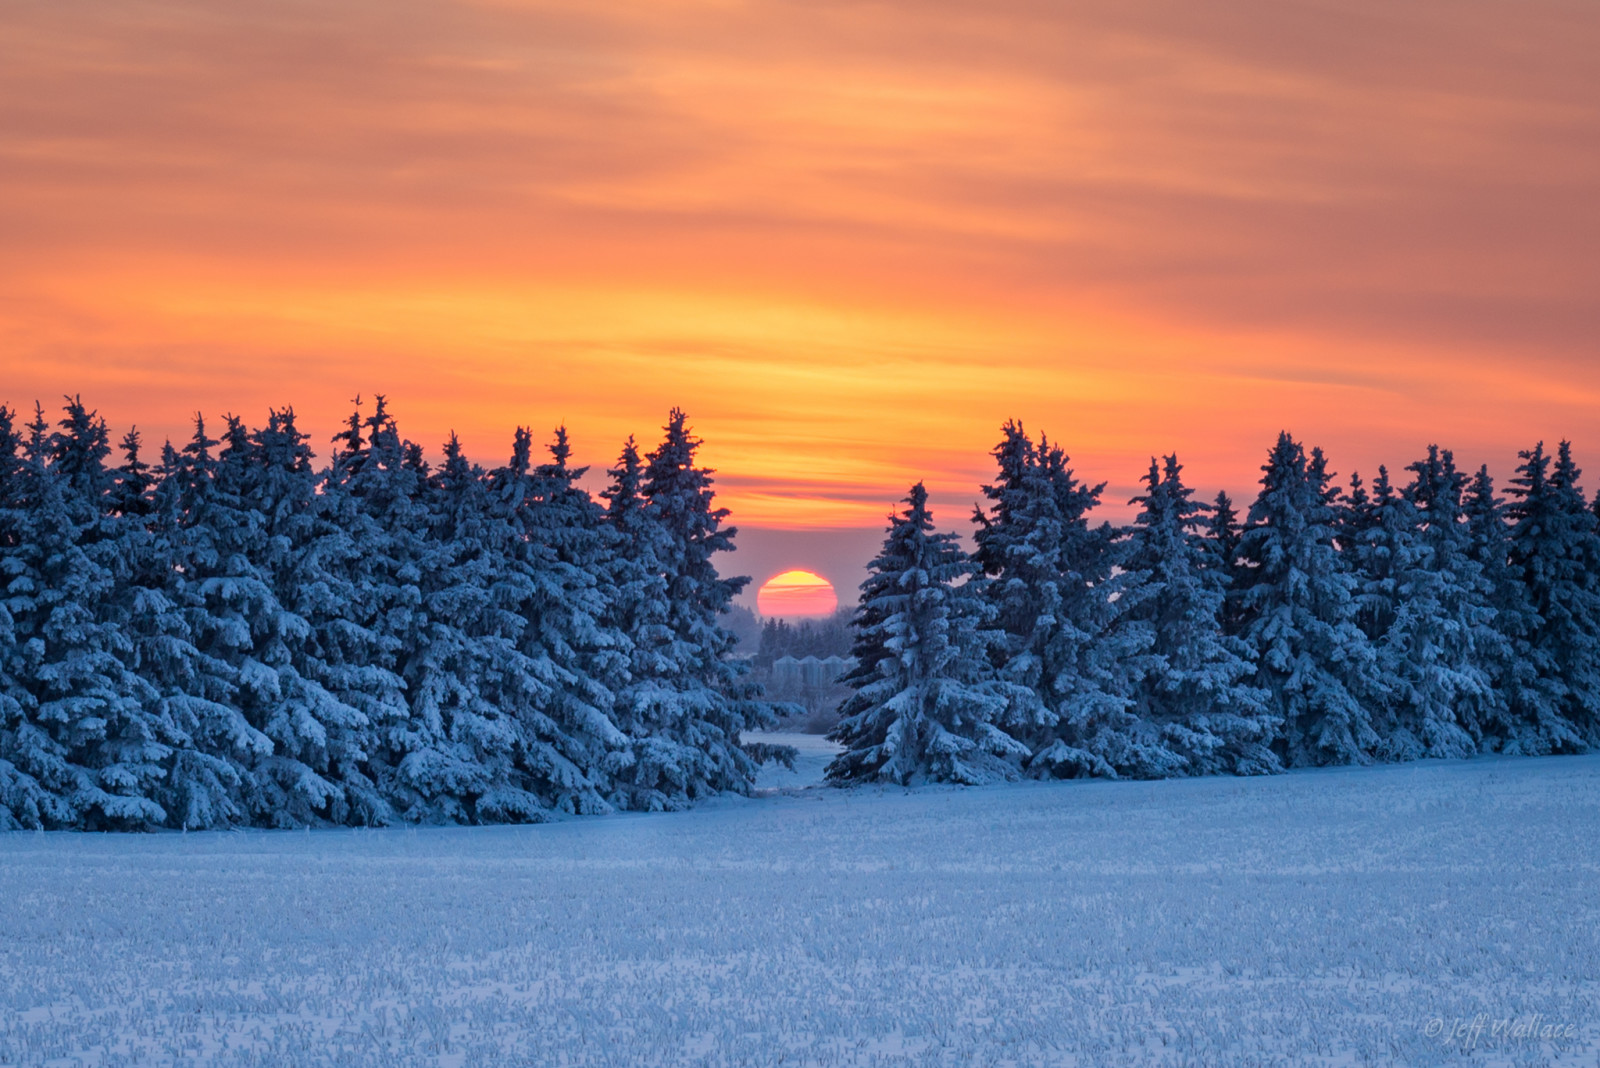 salju, hutan, matahari terbenam, musim dingin